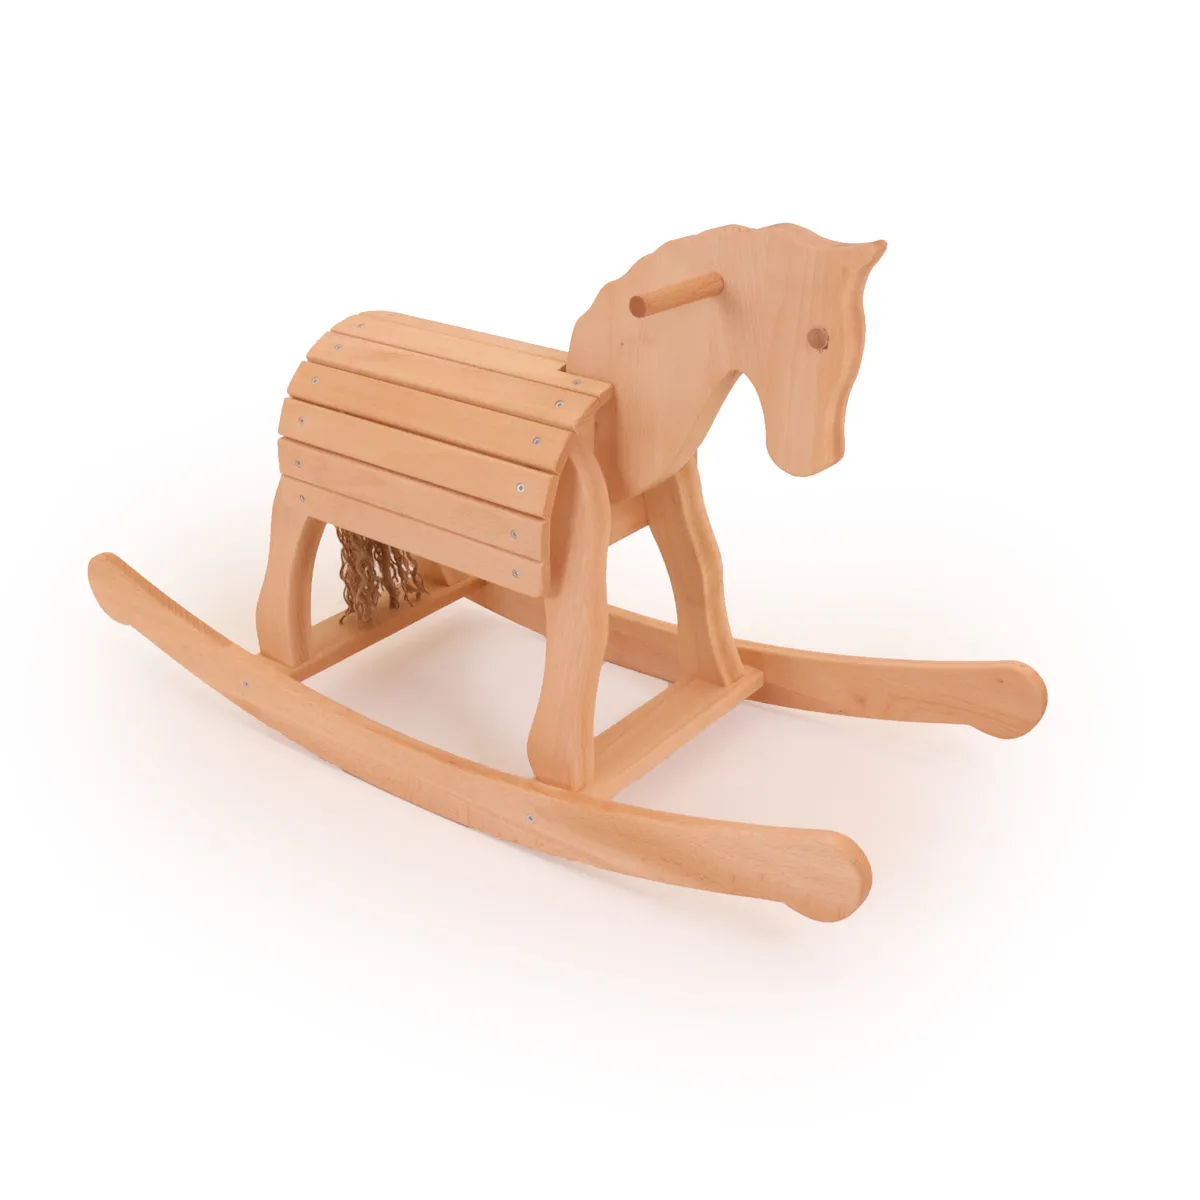 Naturfarbenes Holz-Schaukelpferd auf Kufen. Sitzfläche aus Leisten ähnlich Voltigierpferd.